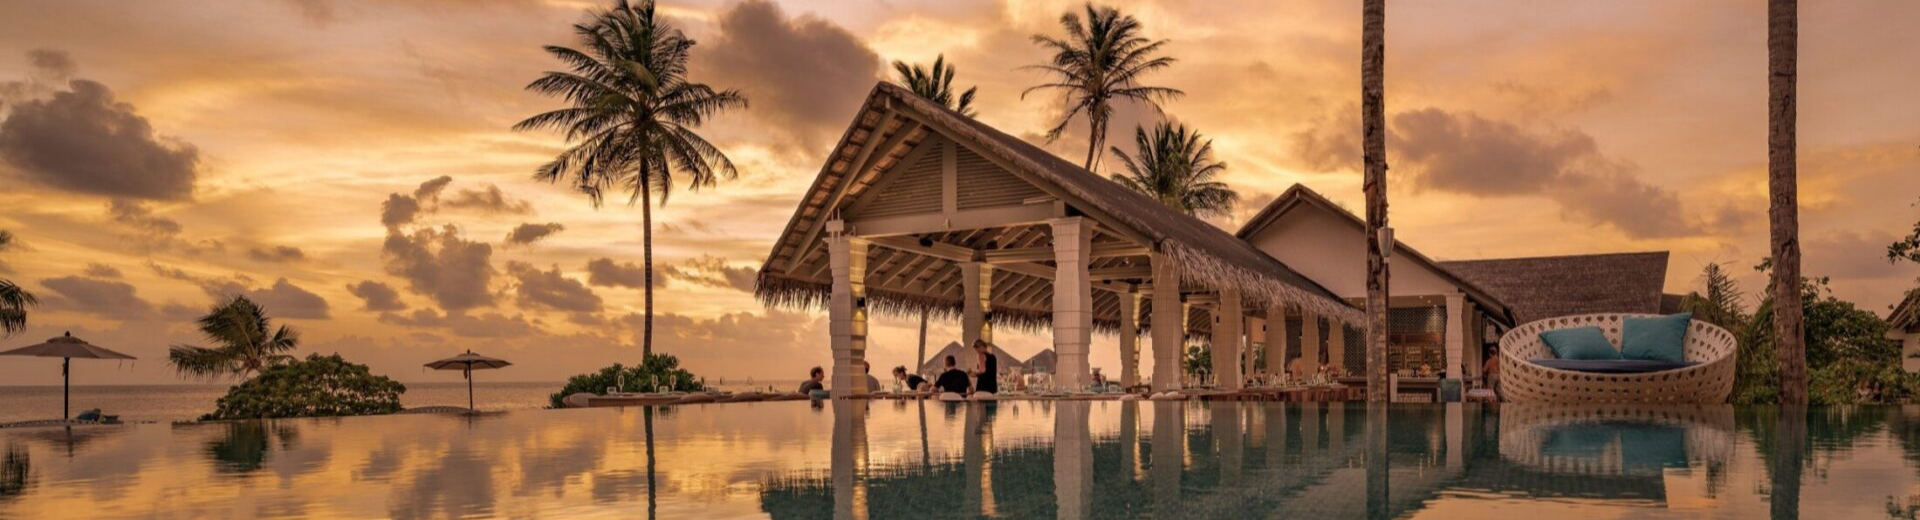 馬爾地夫旅遊飯店推薦-科拉科拉度假村